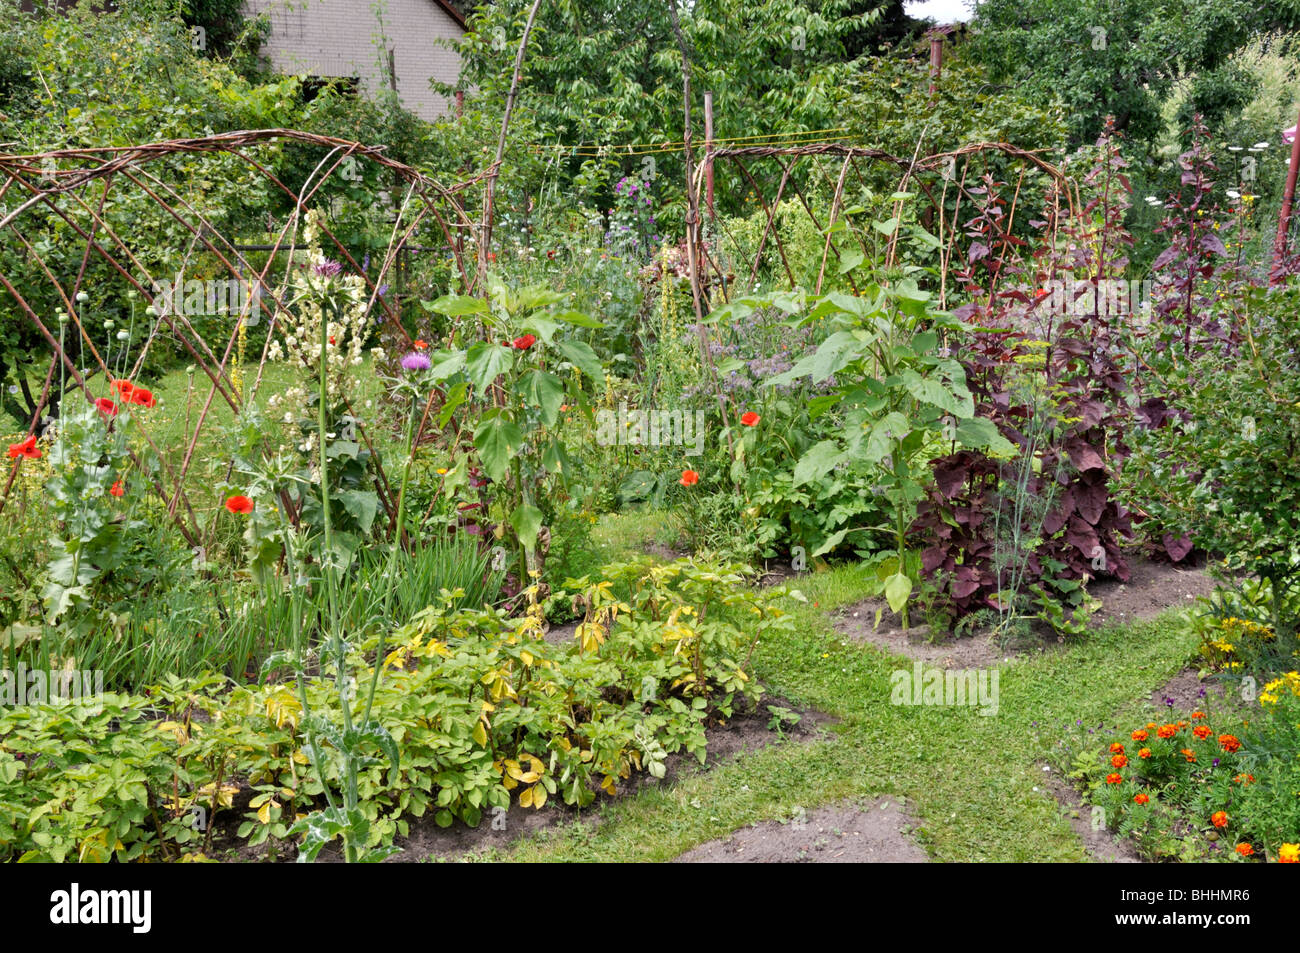 Gemüse Betten in einem natürlichen Garten. Design: Susanna komischke Stockfoto